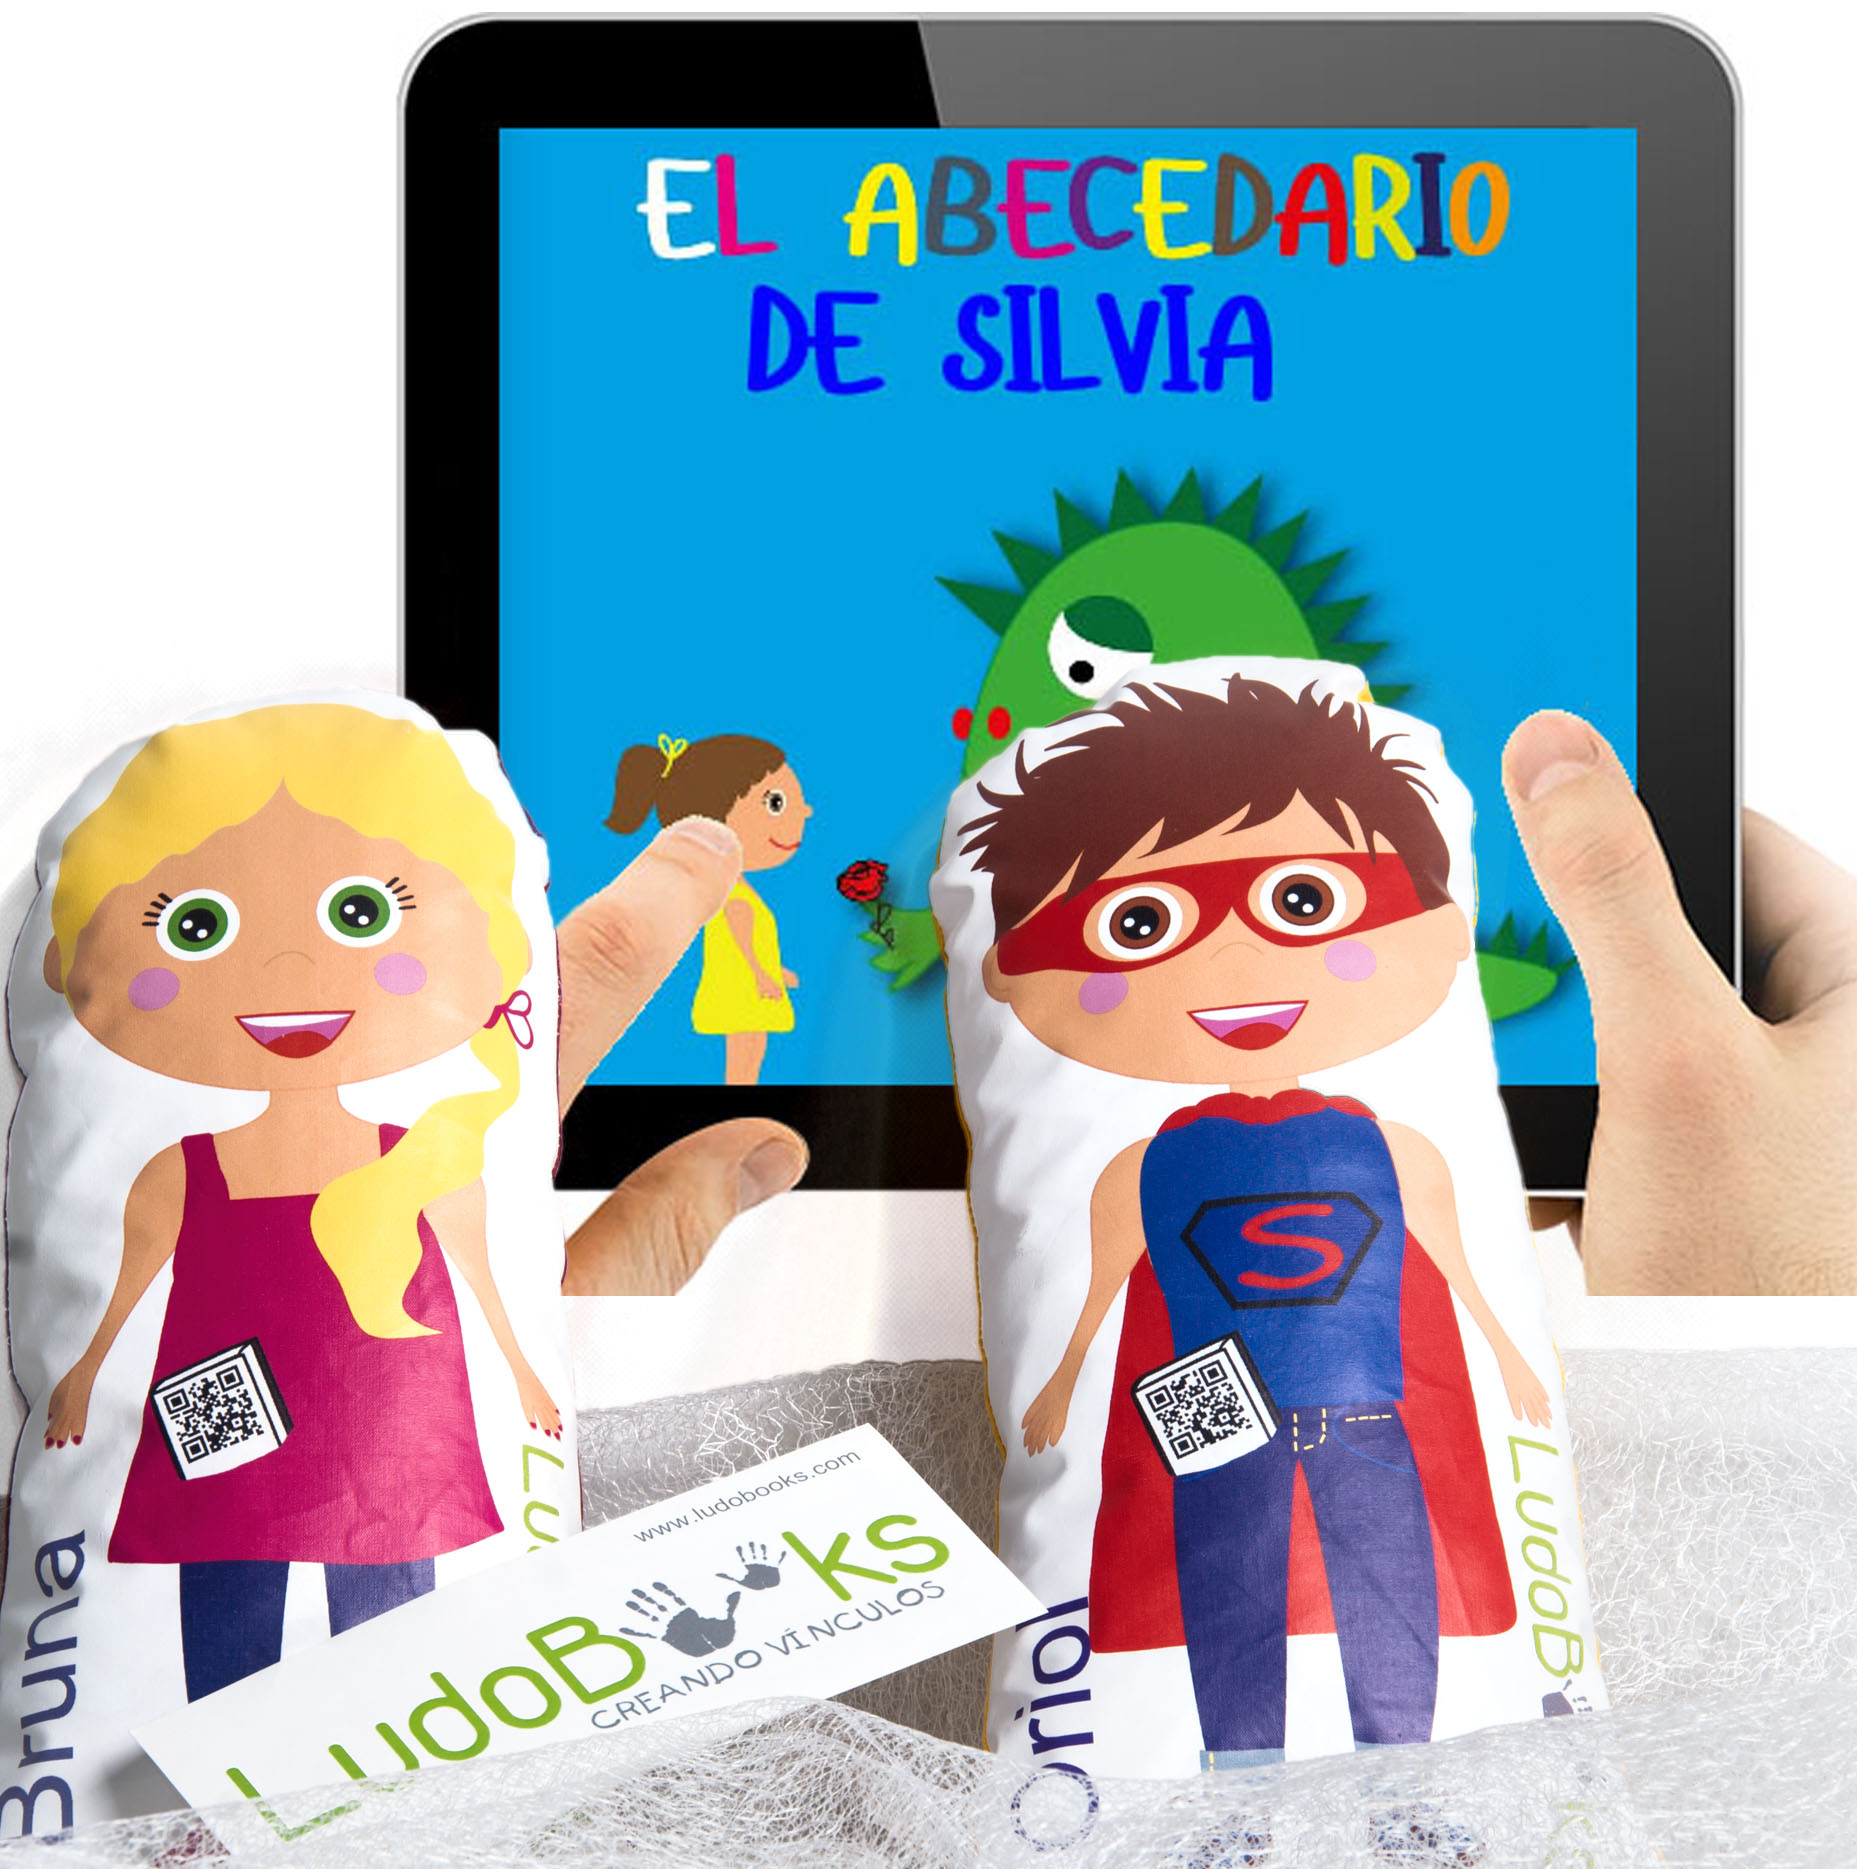 Libros personalizados para Sant Jordi - con sus muñecos personalizados